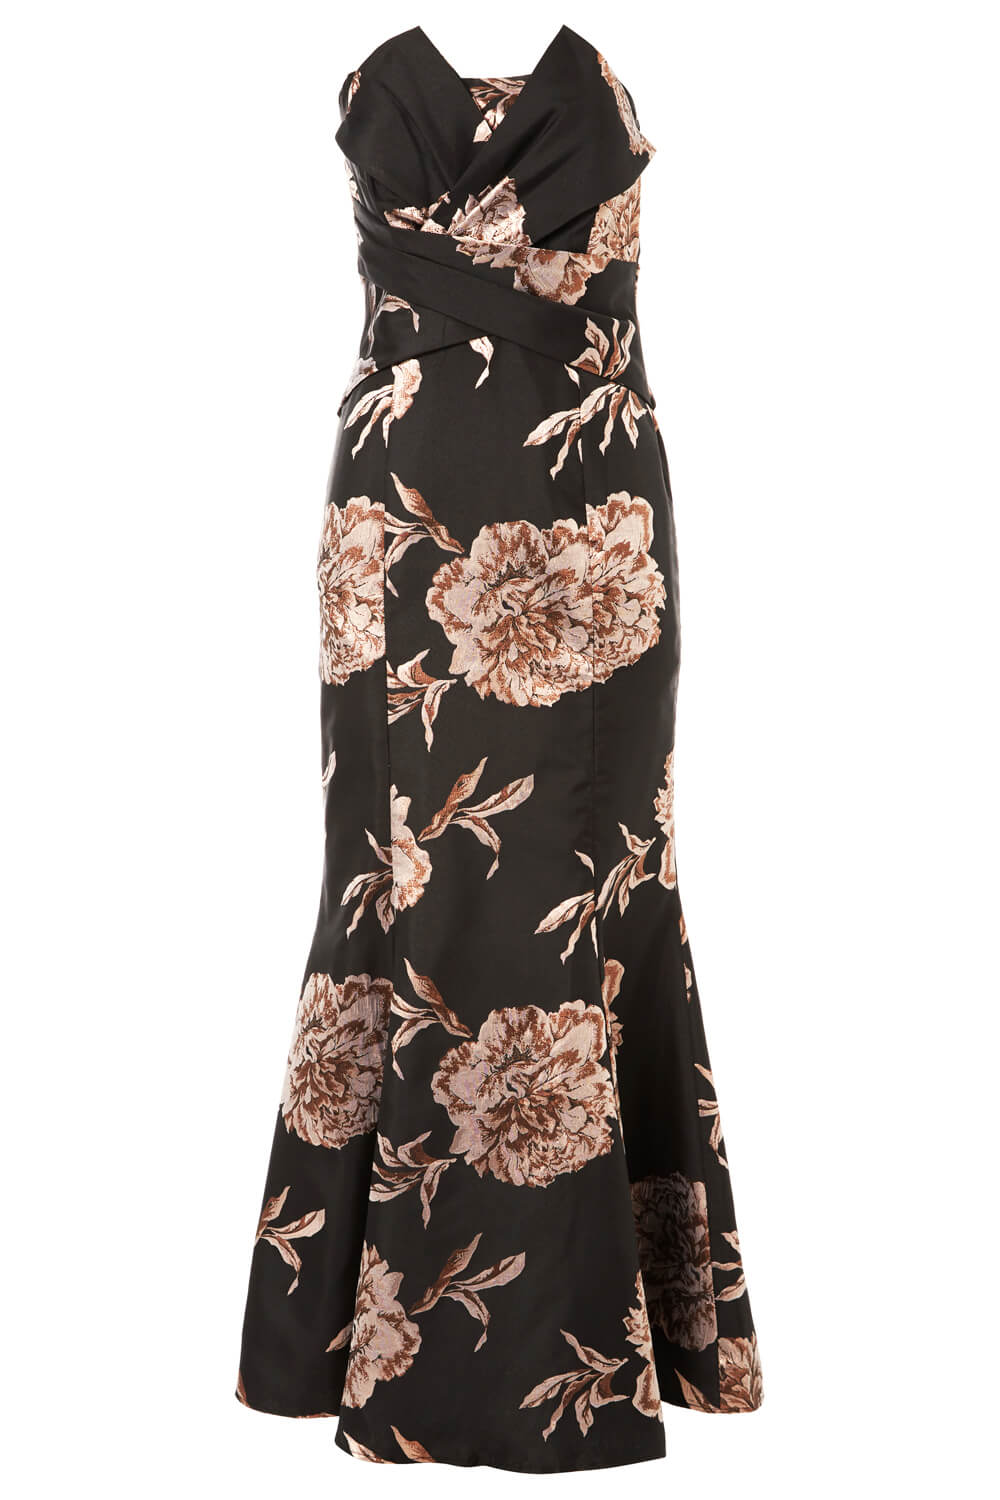 Black Floral Jacquard Fishtail Maxi Dress, Image 6 of 6